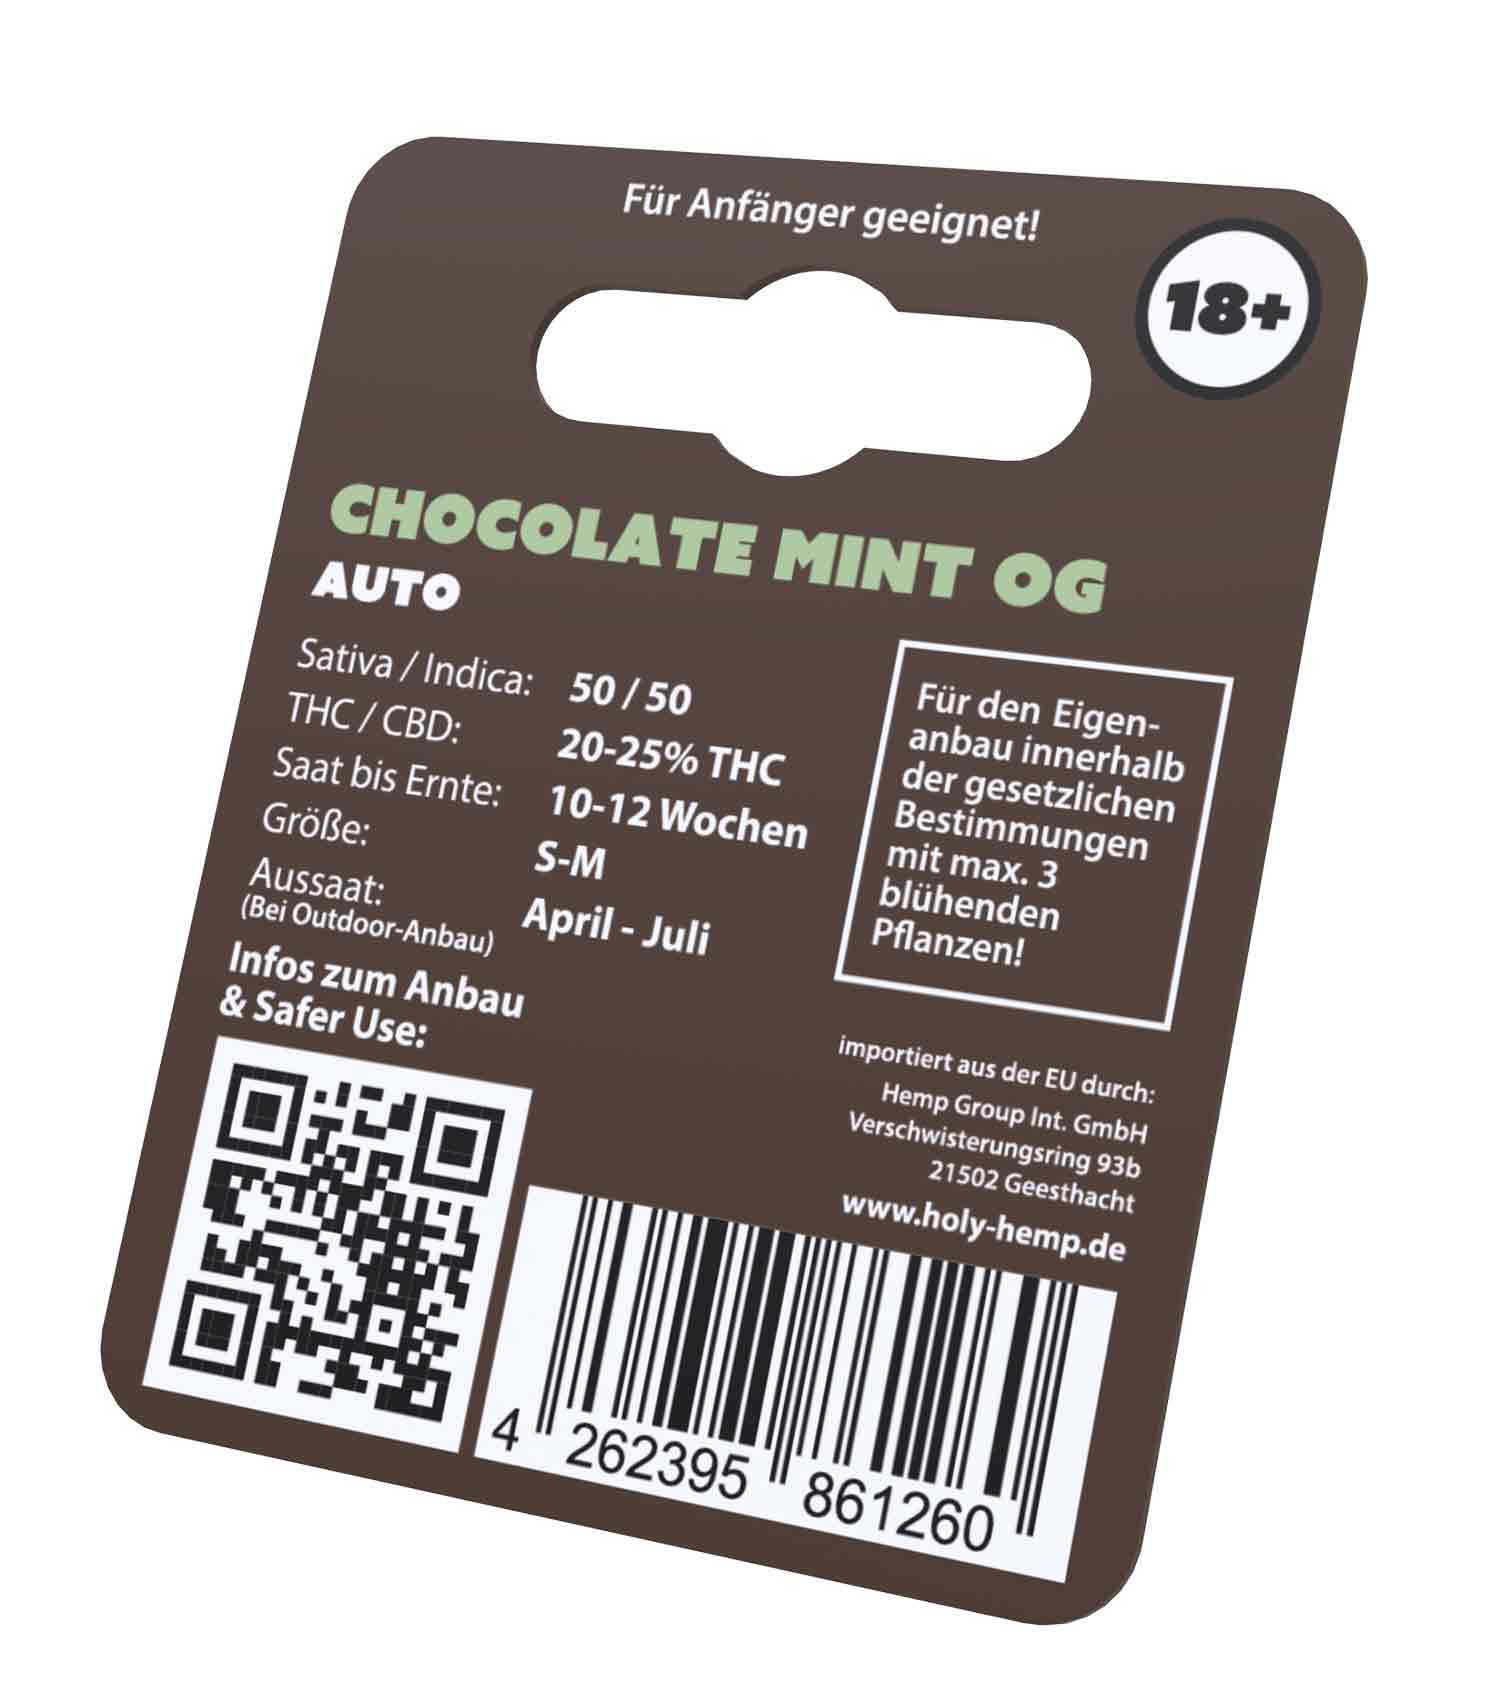 Chocolate Mint OG Cannabissamen